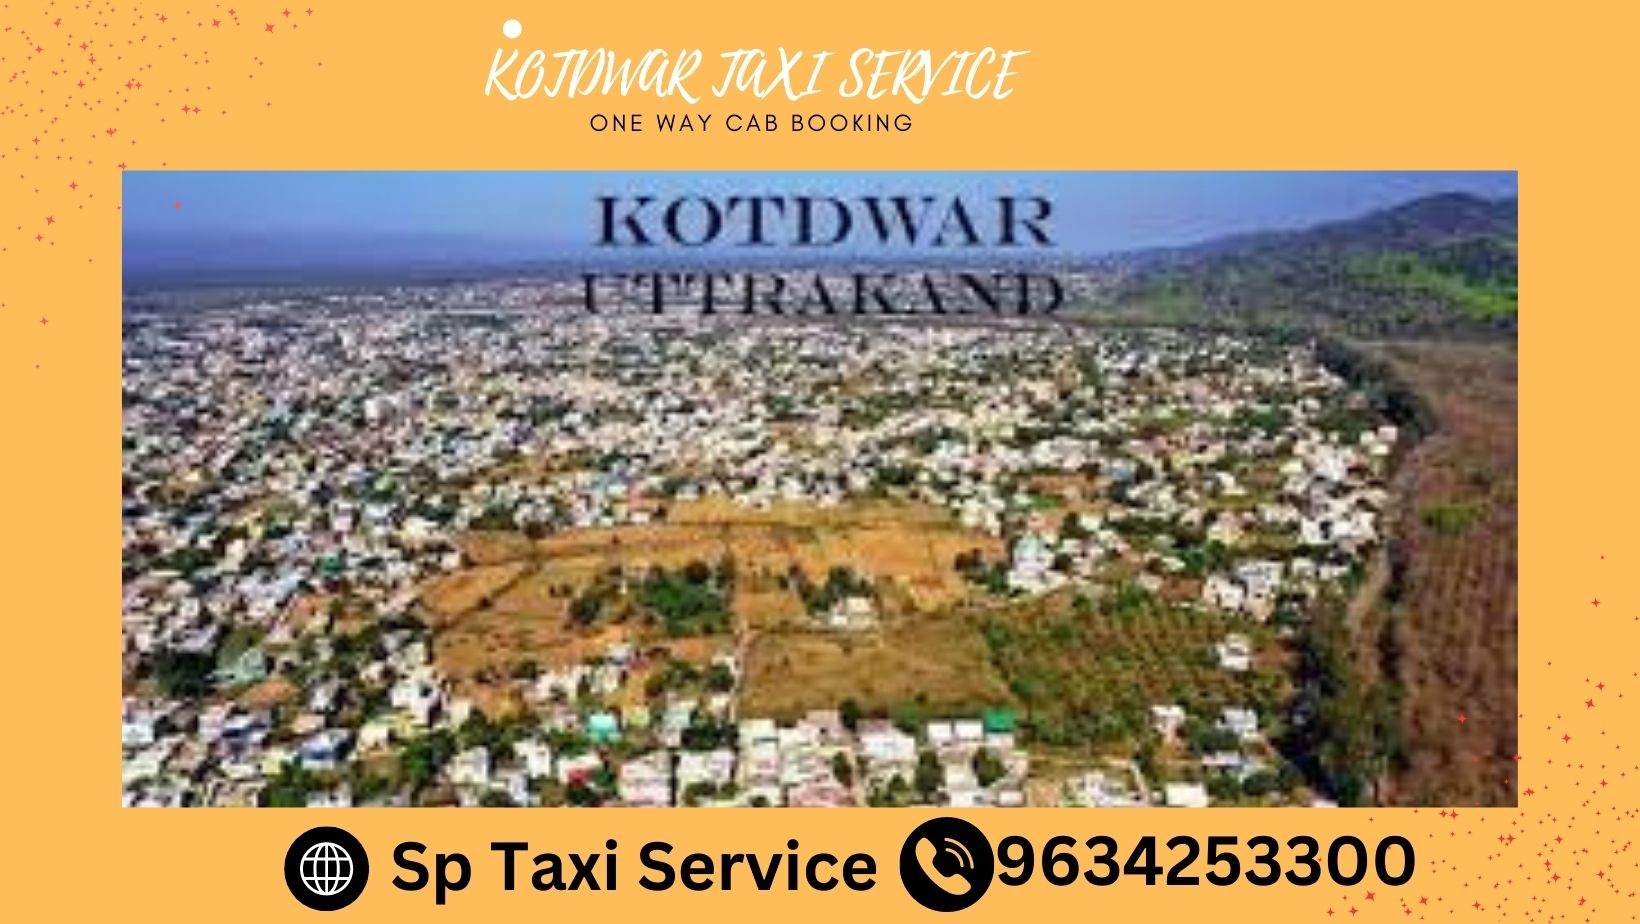 Kotdwar to Nainital Taxi